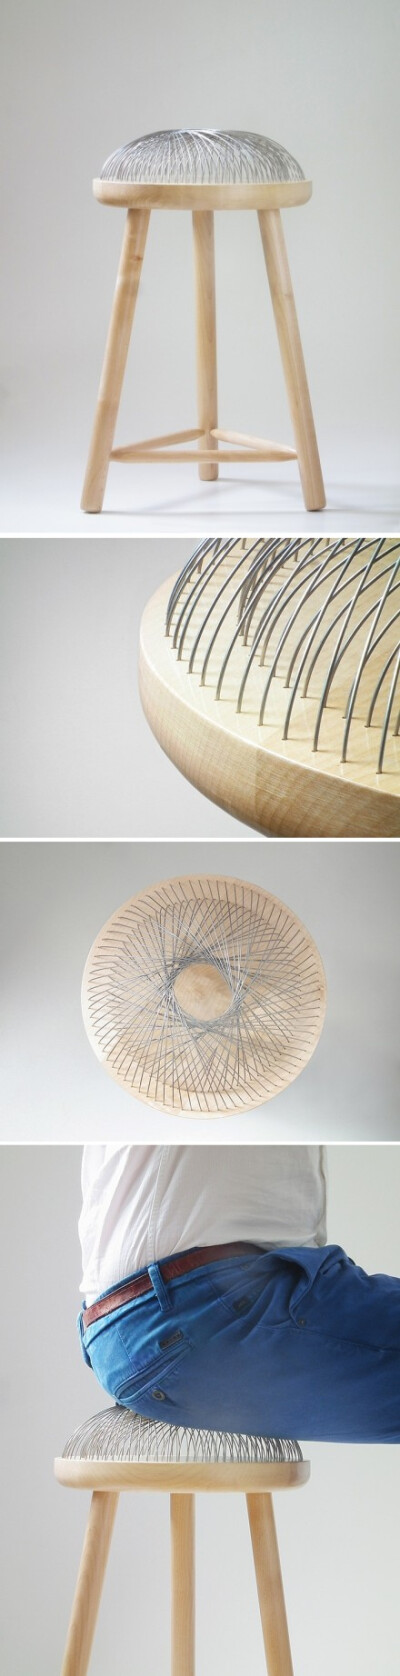 荷兰设计工作室TOER的作品-Dome Stool。